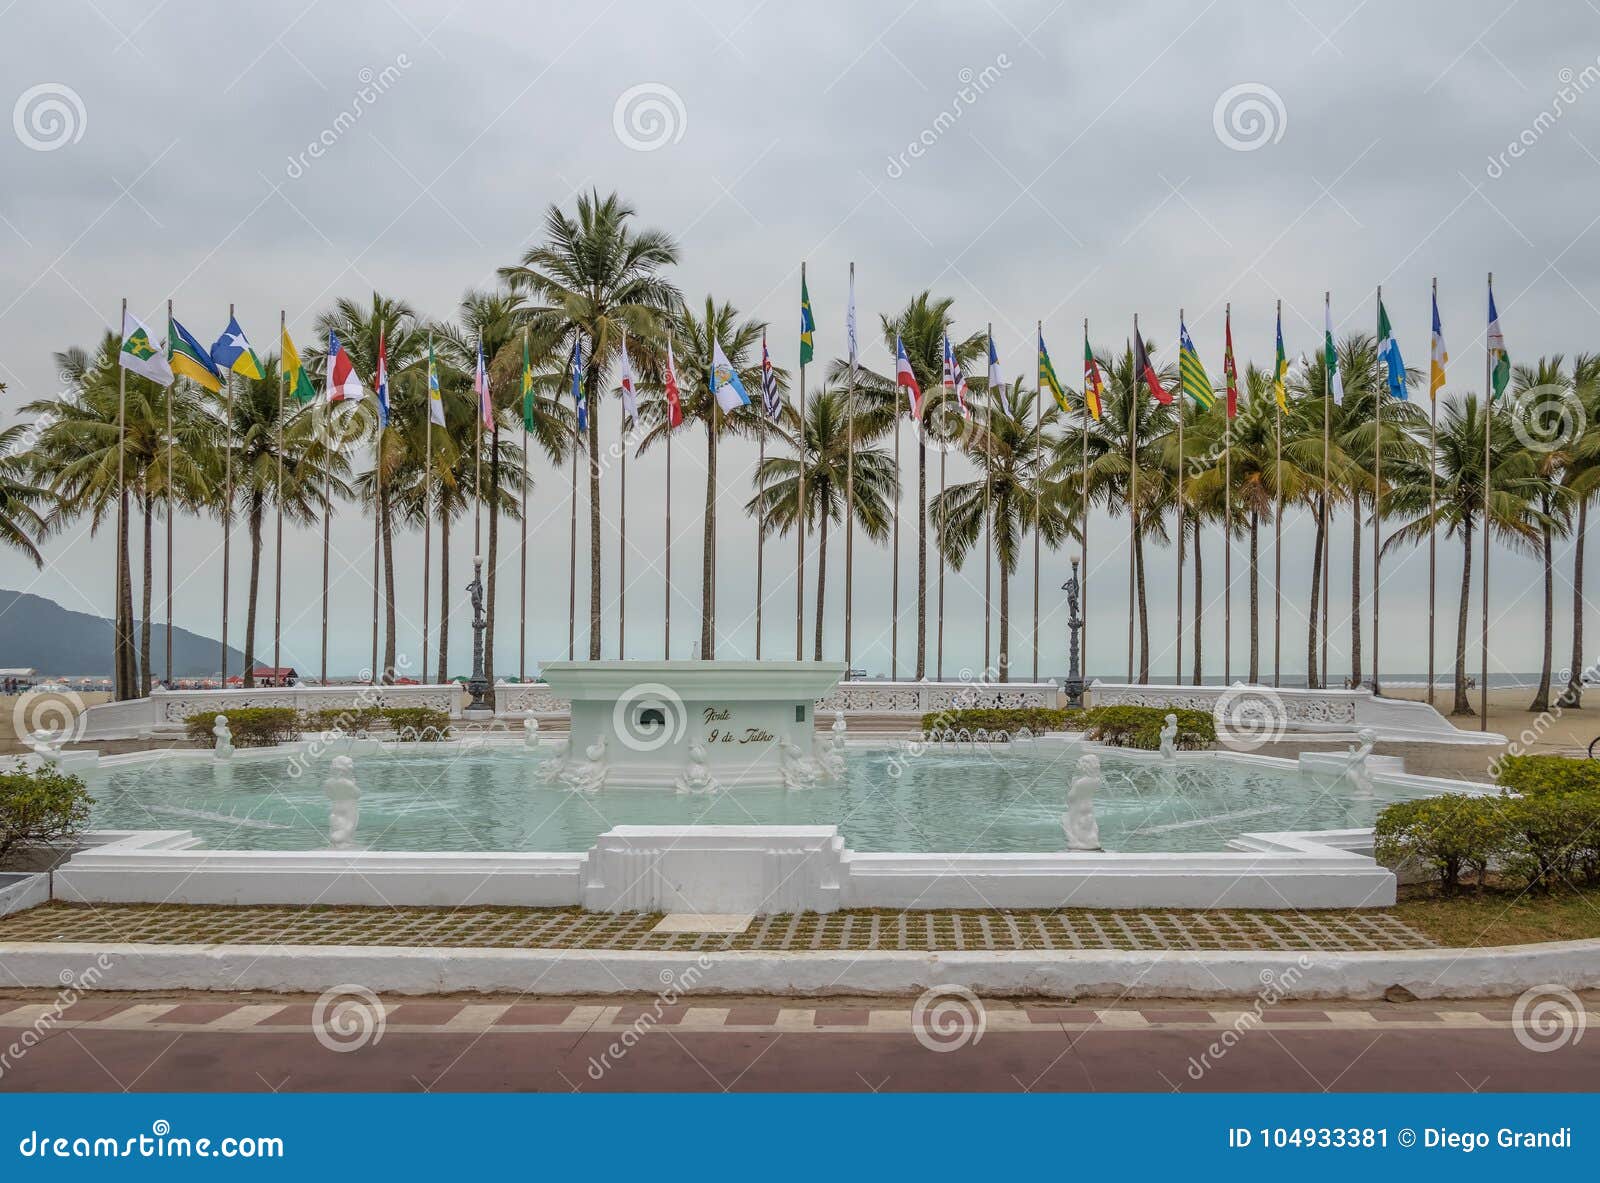 flags square praca das bandeiras and 9 de julho fountain at coastal garden of santos beach - santos, sao paulo, brazil